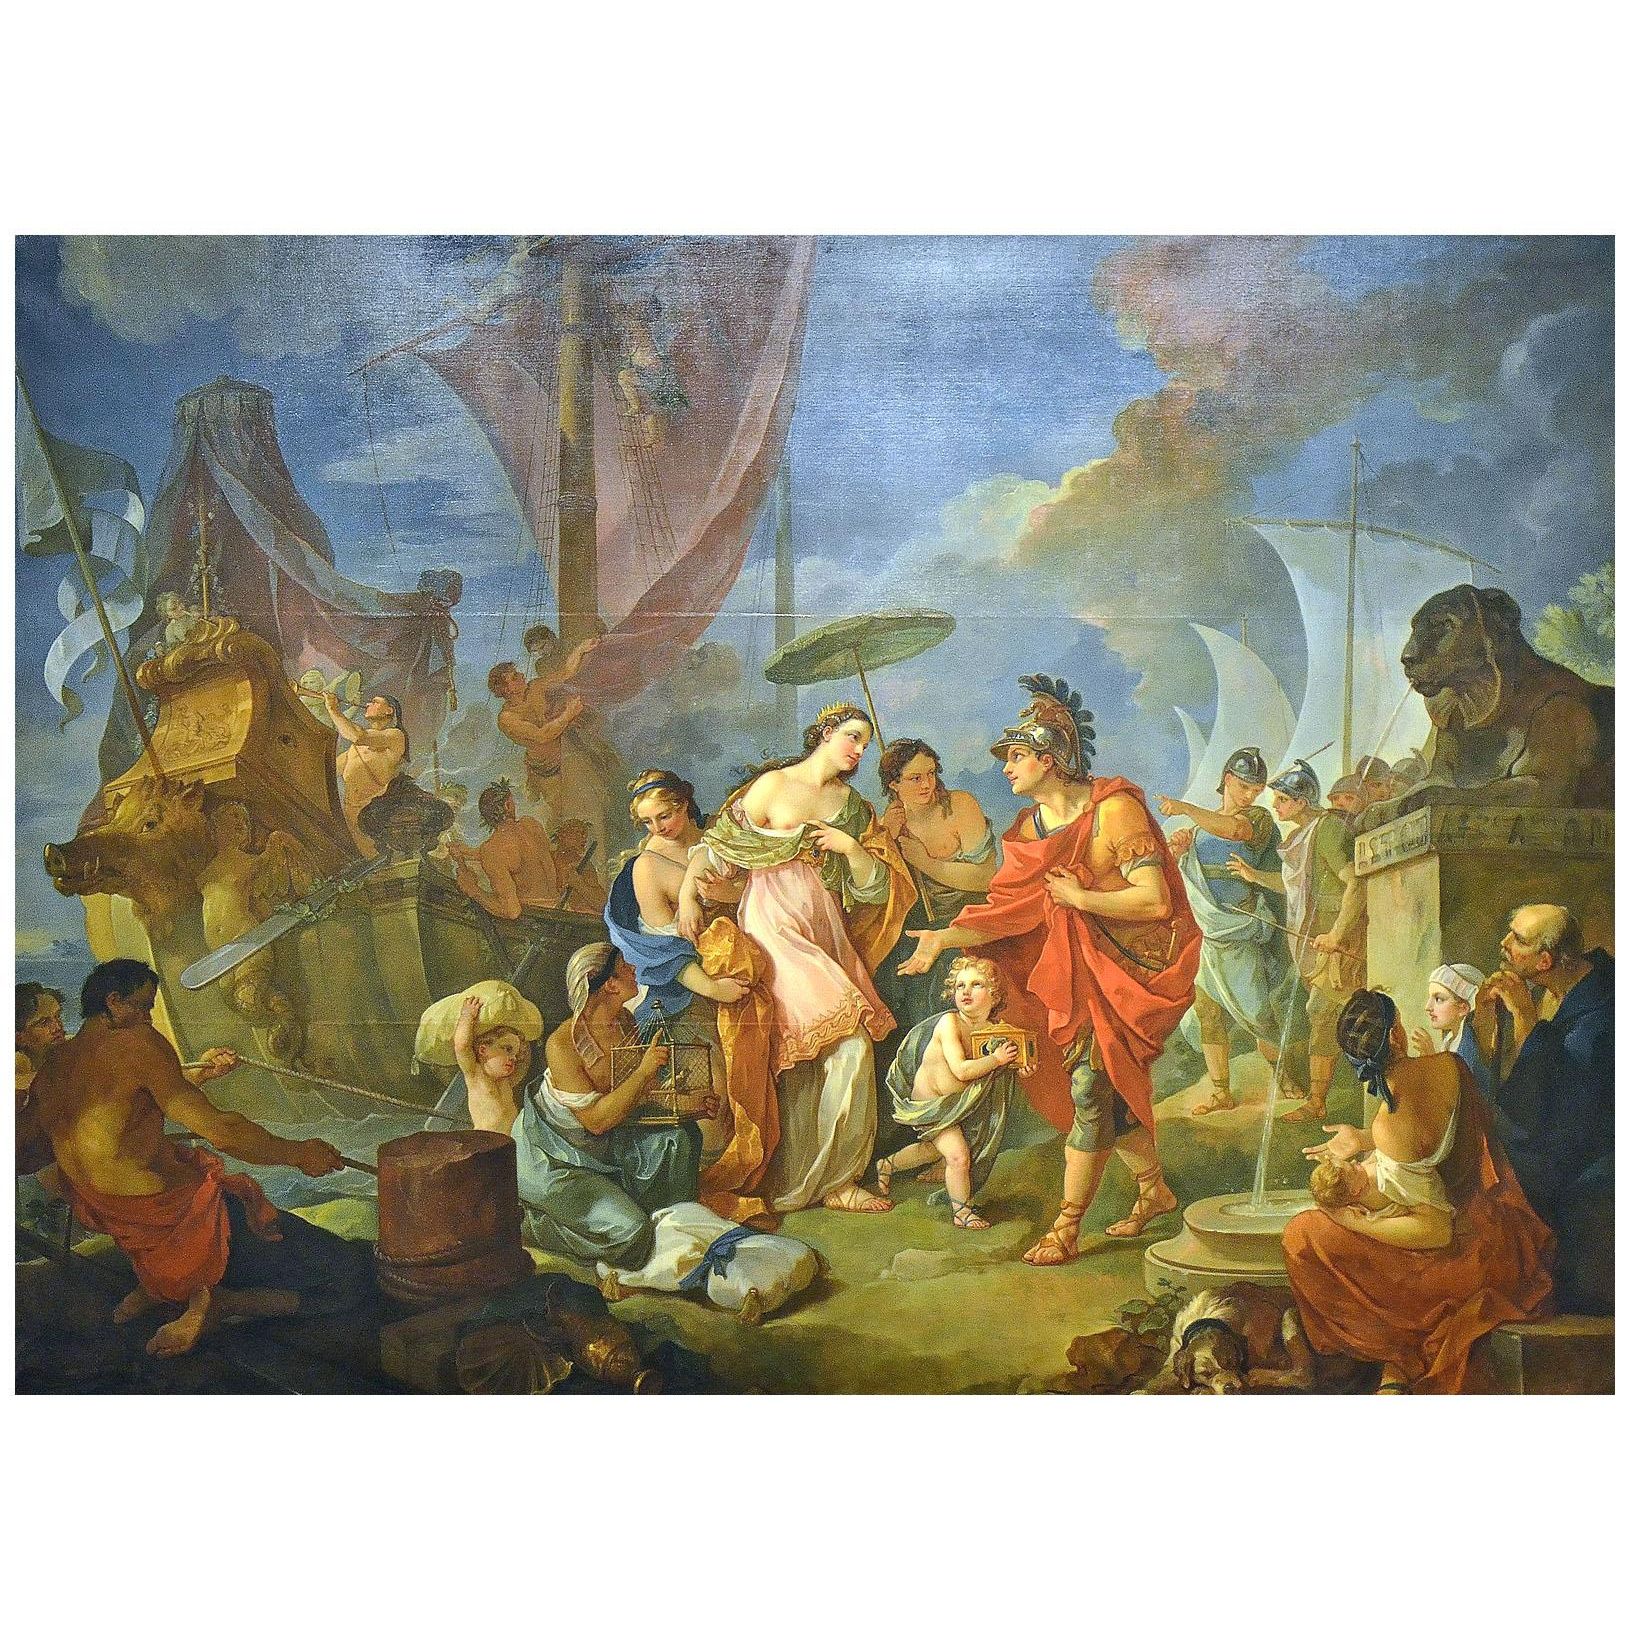 Charles-Joseph Natoire. L'arrivée de Cléopatre à Tarse. 1756. Musée des Beaux-Arts de Nîmes